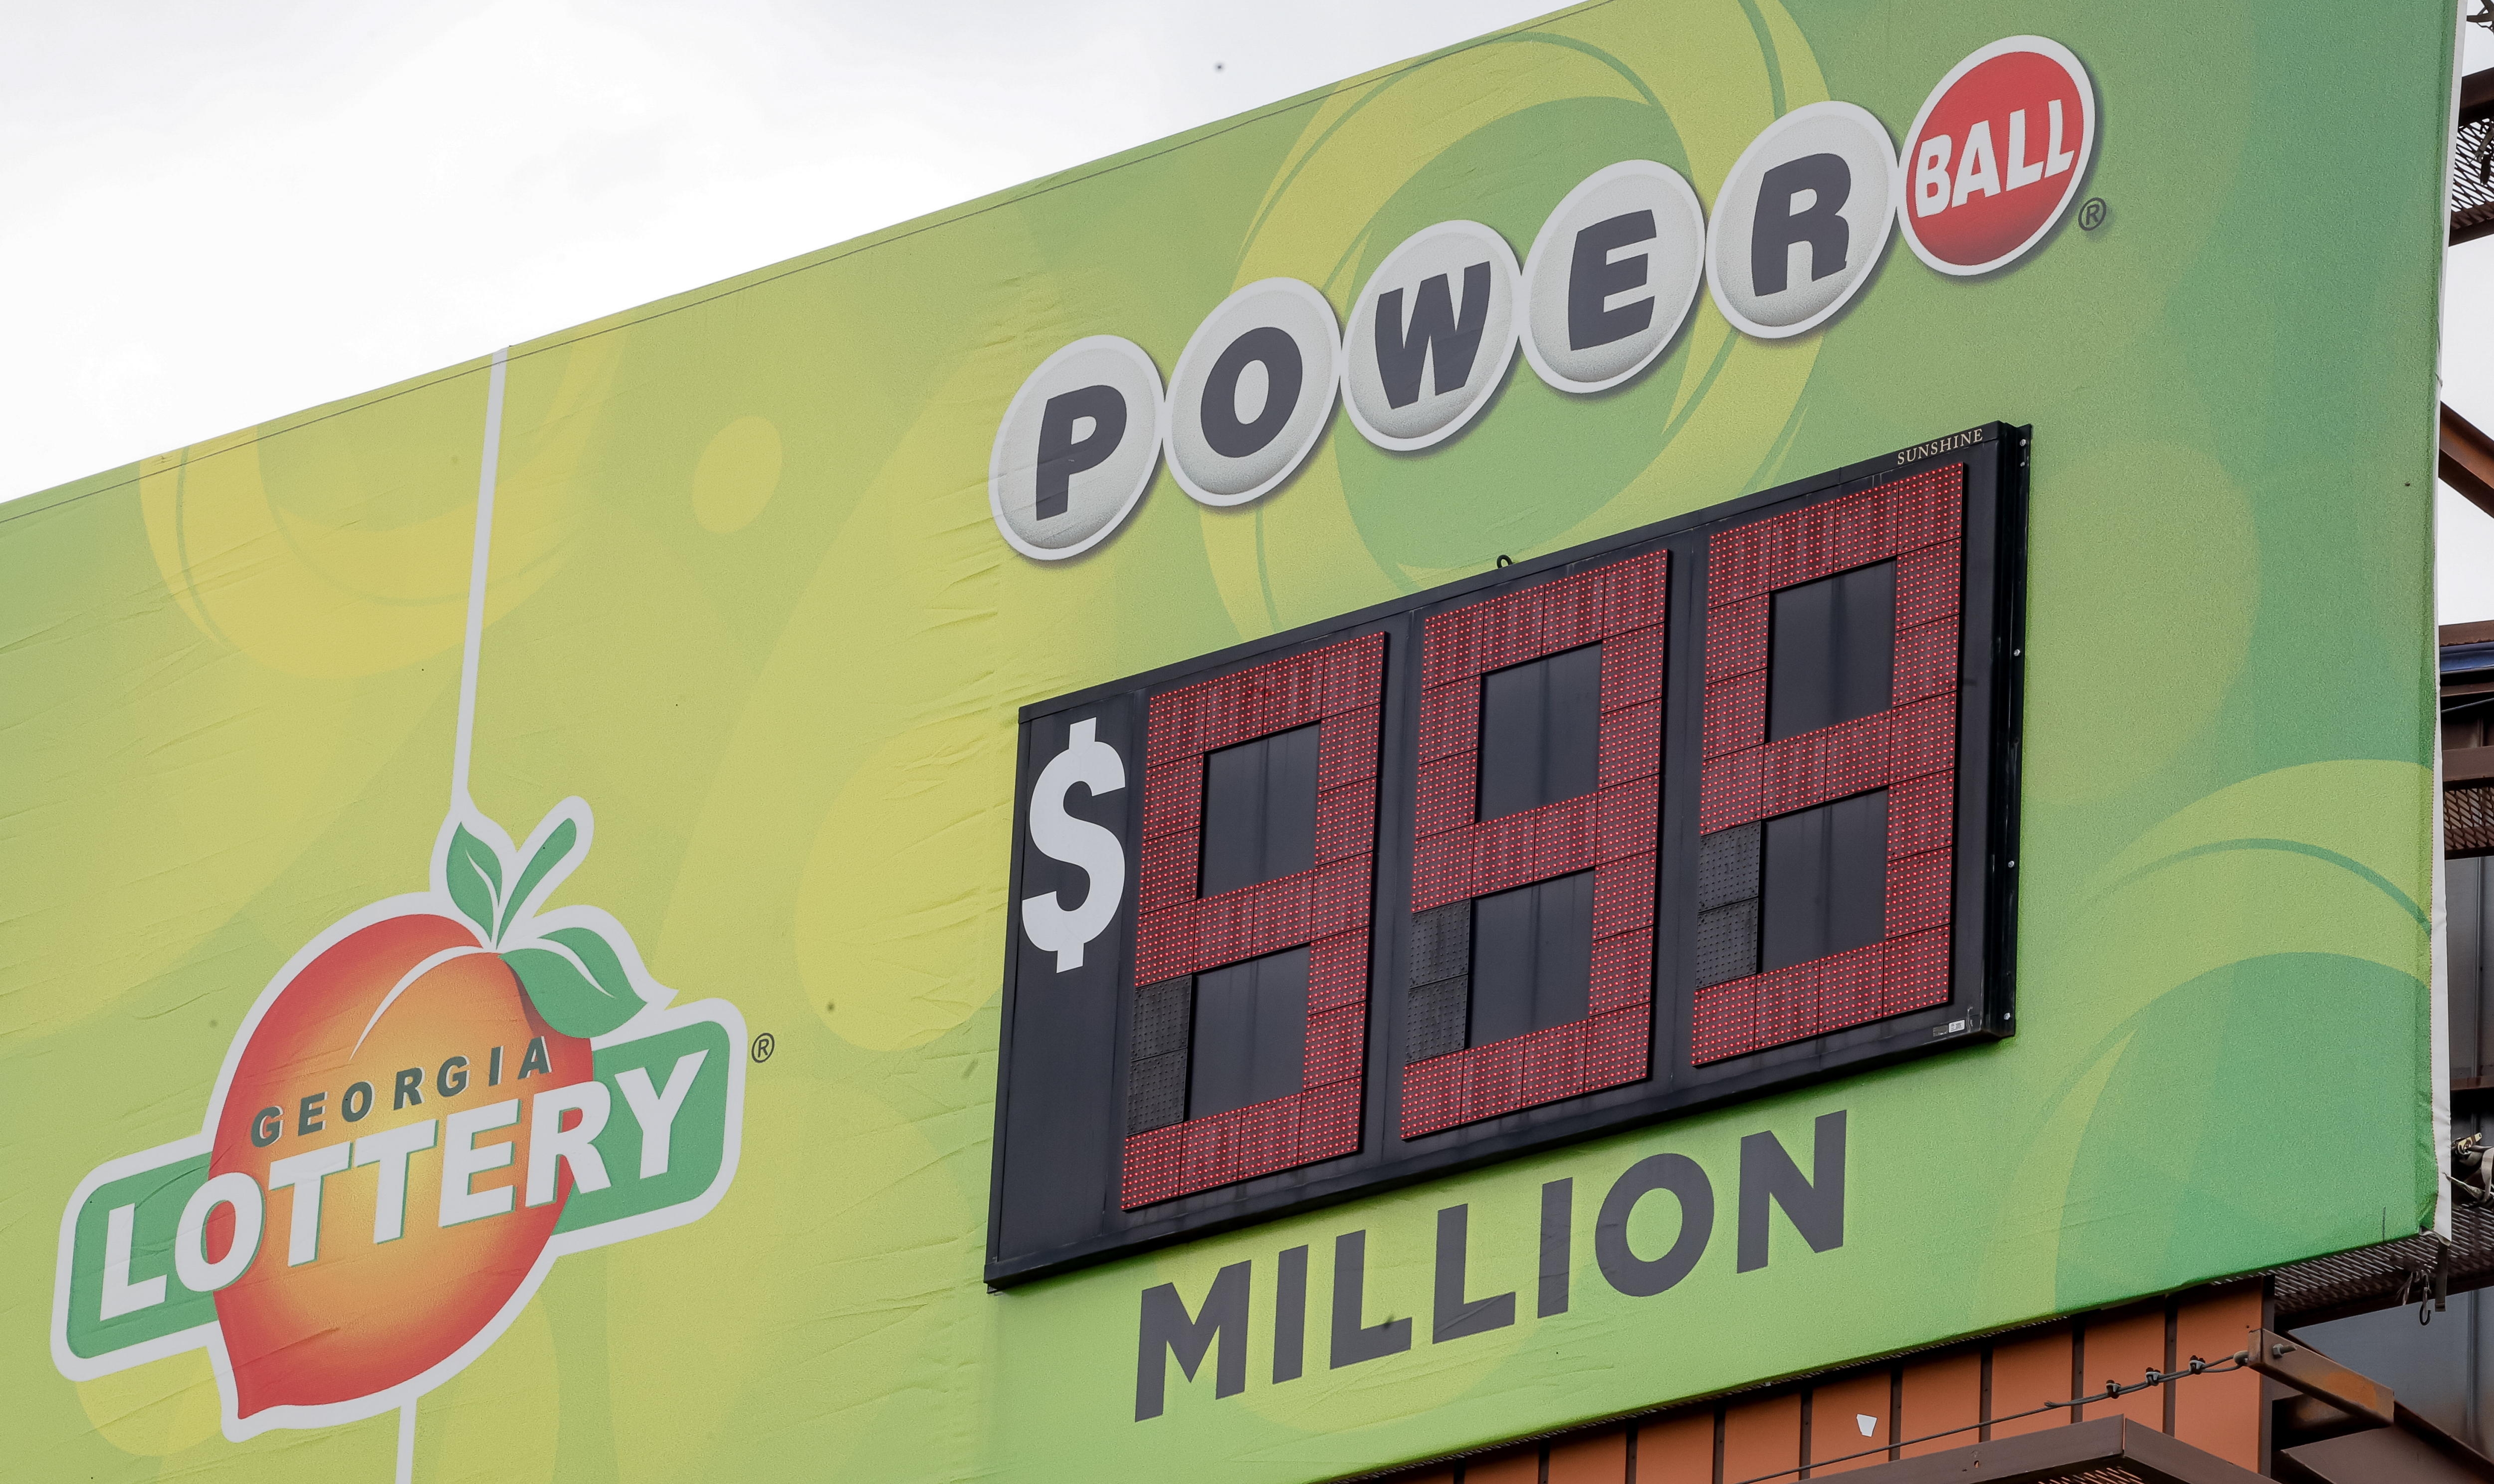 El premio mayor de la lotería Powerball llegó a una cifra récord